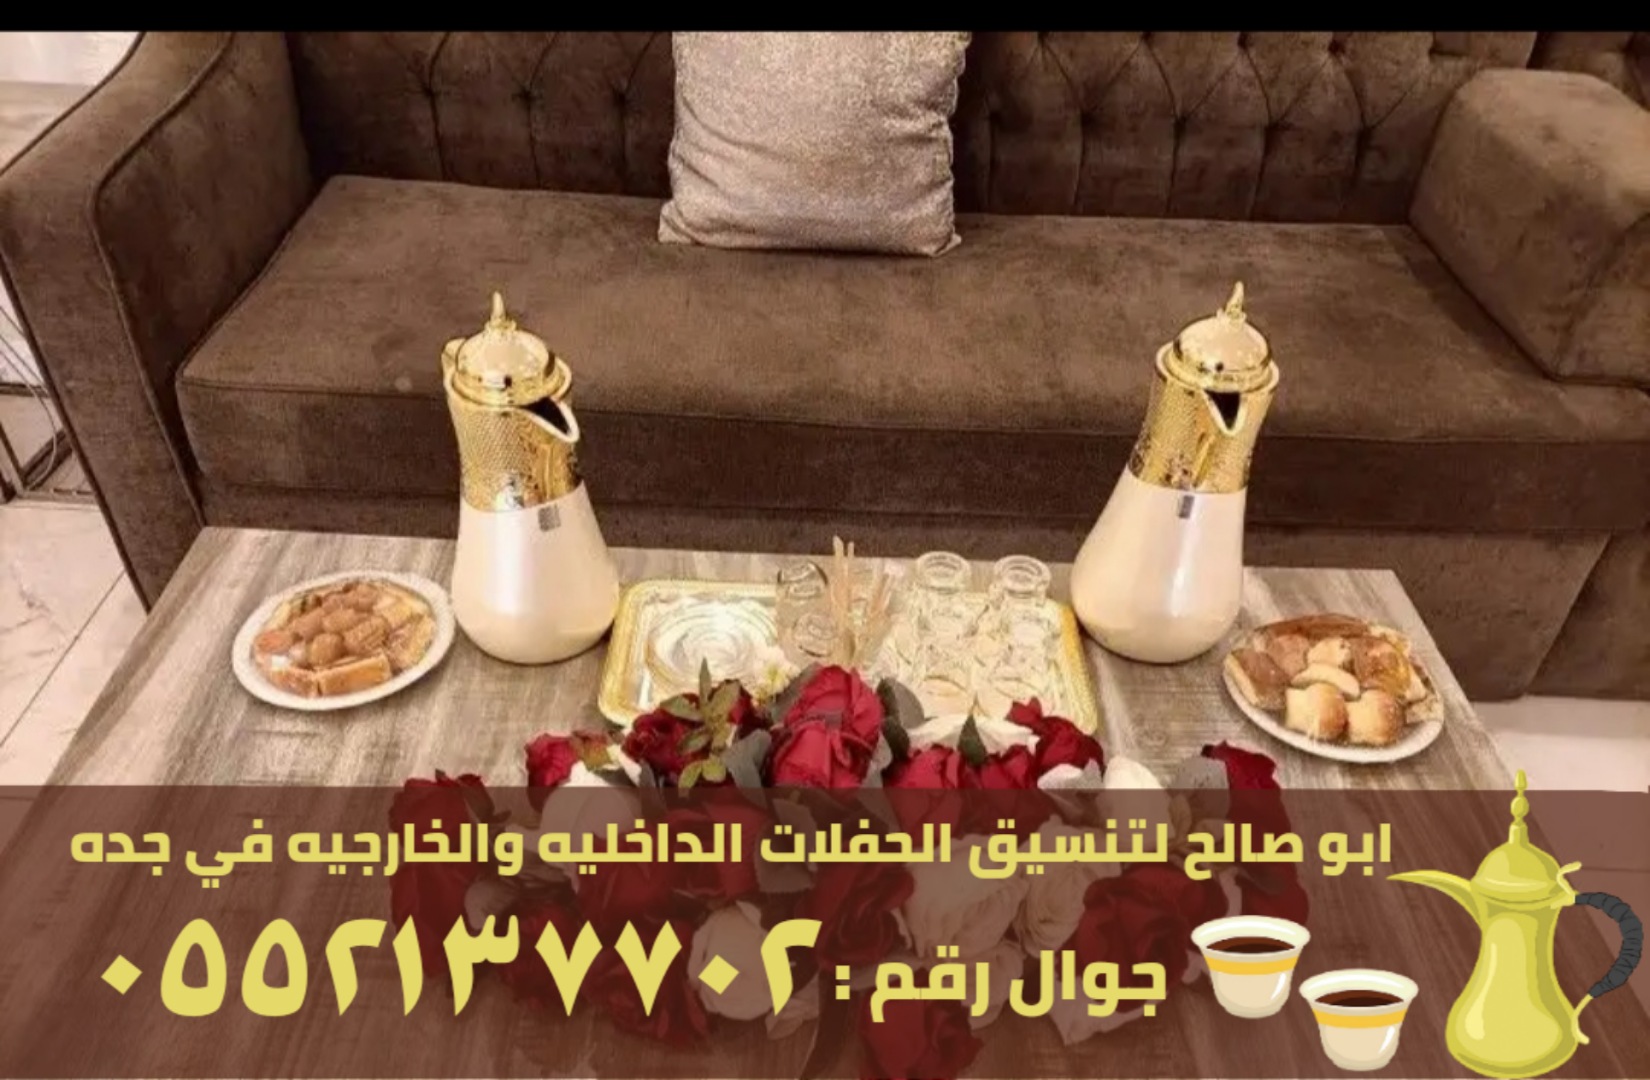 مباشرين قهوة للضيافة في جدة, 0552137702 P_2562hv5dj6